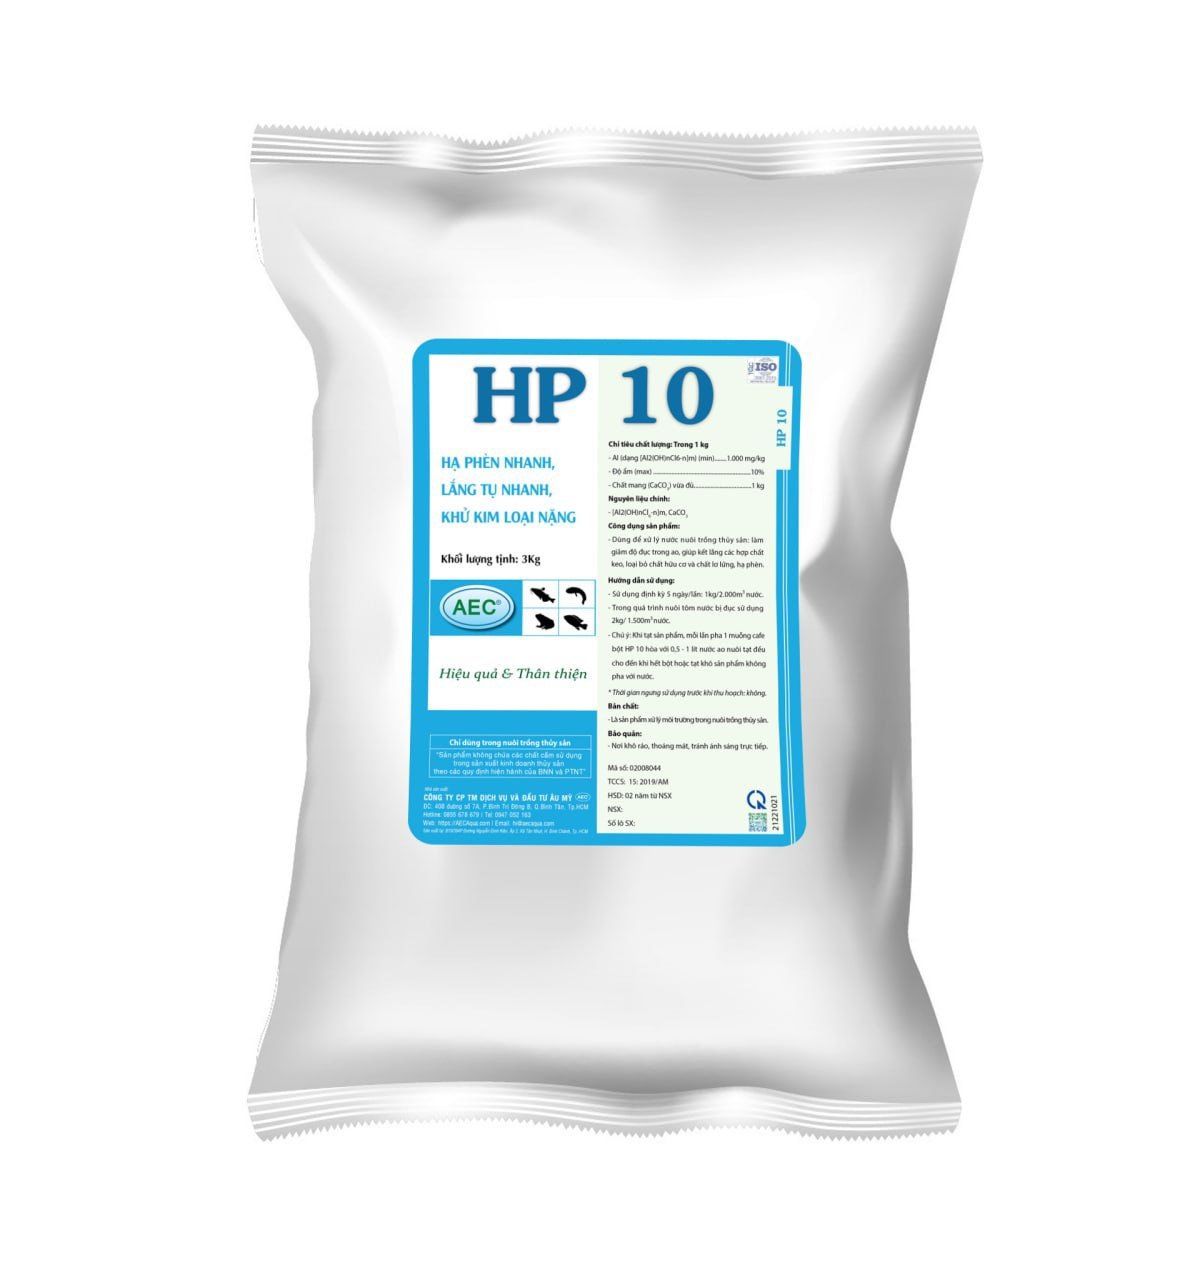  HP 10 - Hạ phèn nhanh, lắng tụ nhanh, khử kim loại nặng 